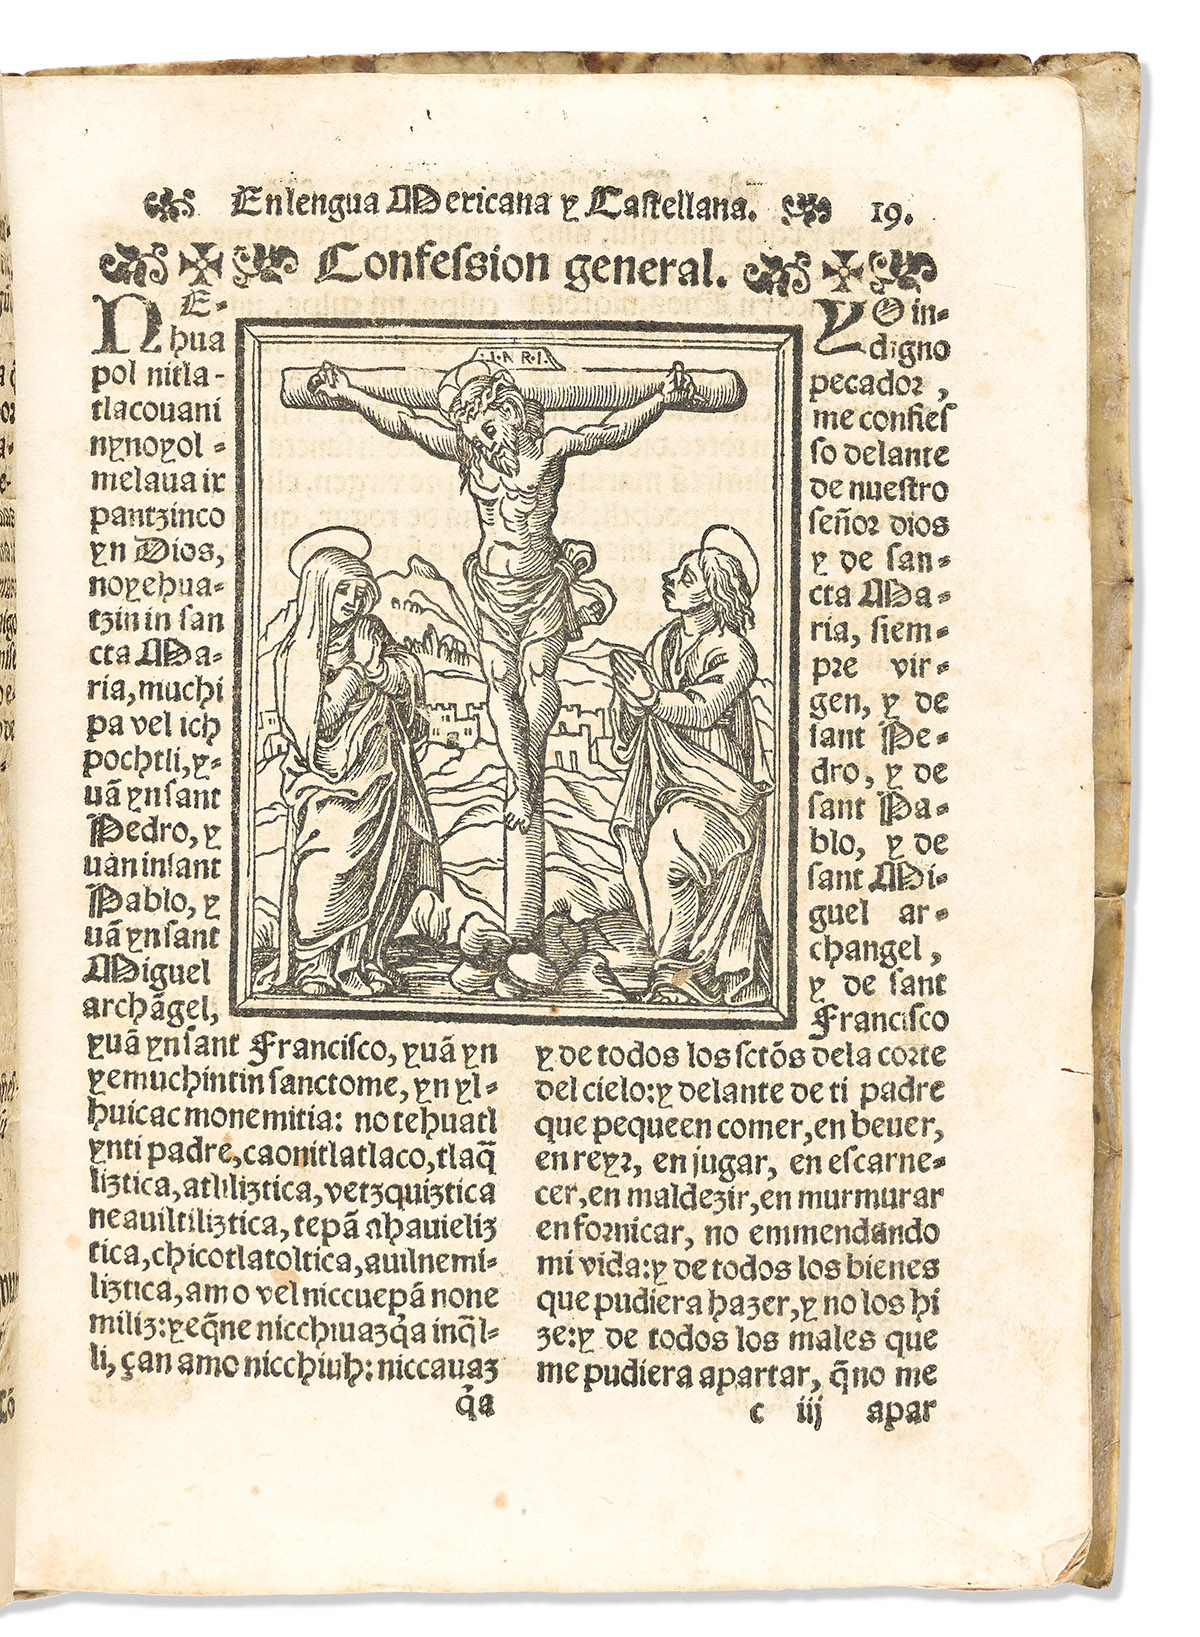 (MEXICAN IMPRINT--1565.) Alonso de Molina. Confessionario mayor, en la lengua mexicana y castellana.